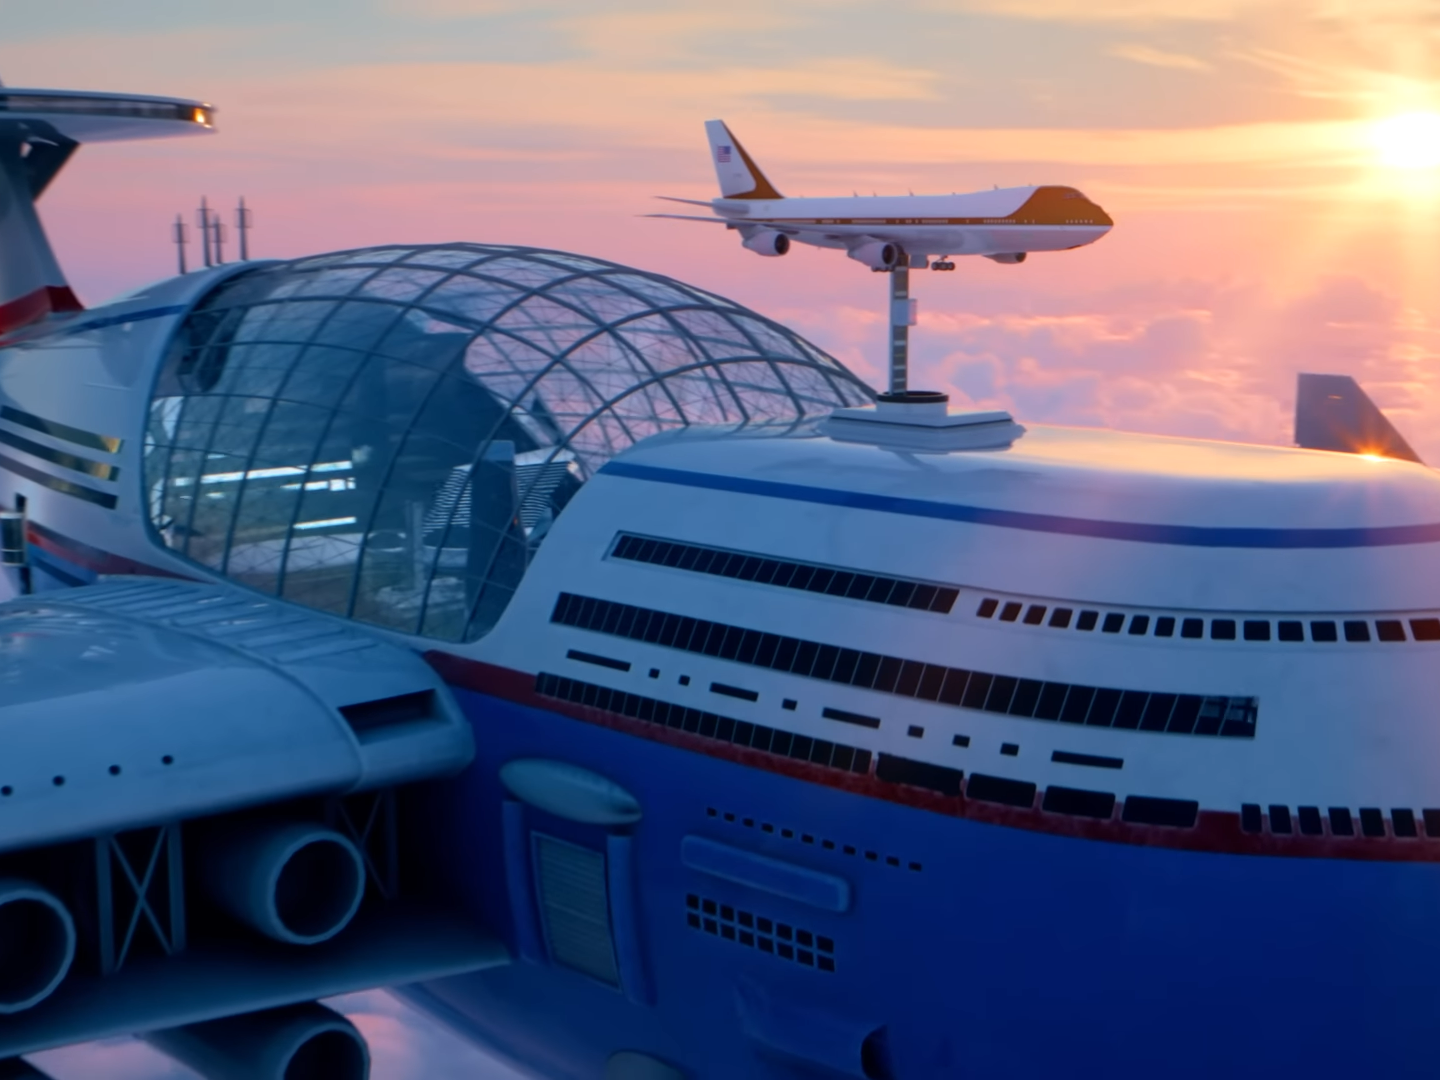 Sky Cruise er det nukleare flyvende skib designet af Hashem Al-Ghaili